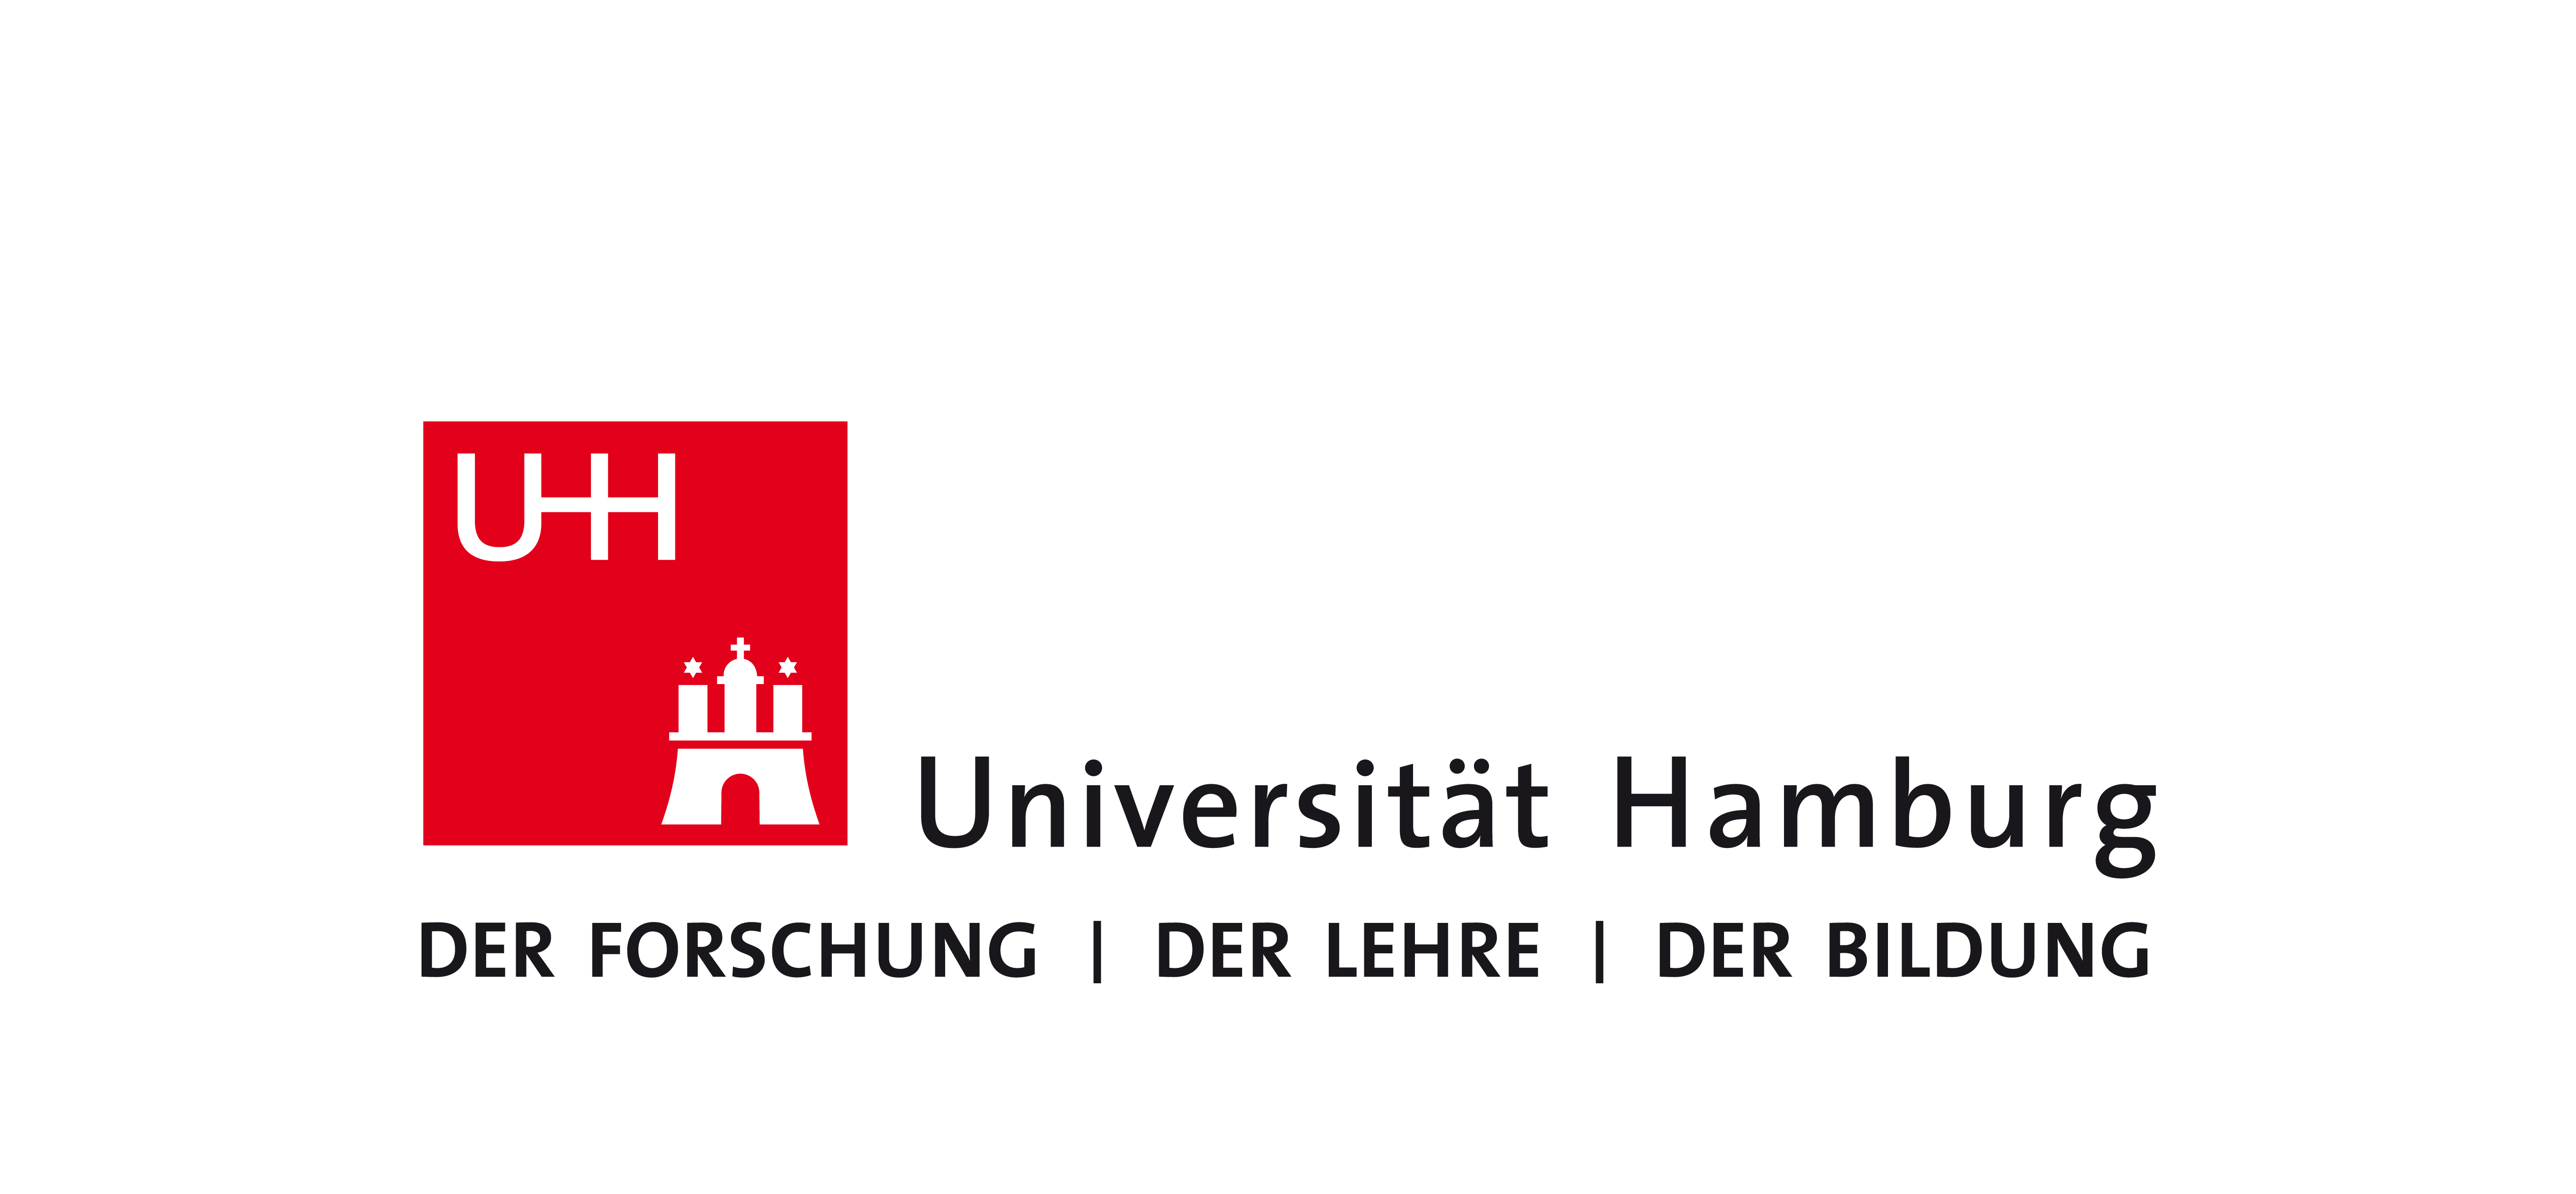 德国大学校徽一览表图片